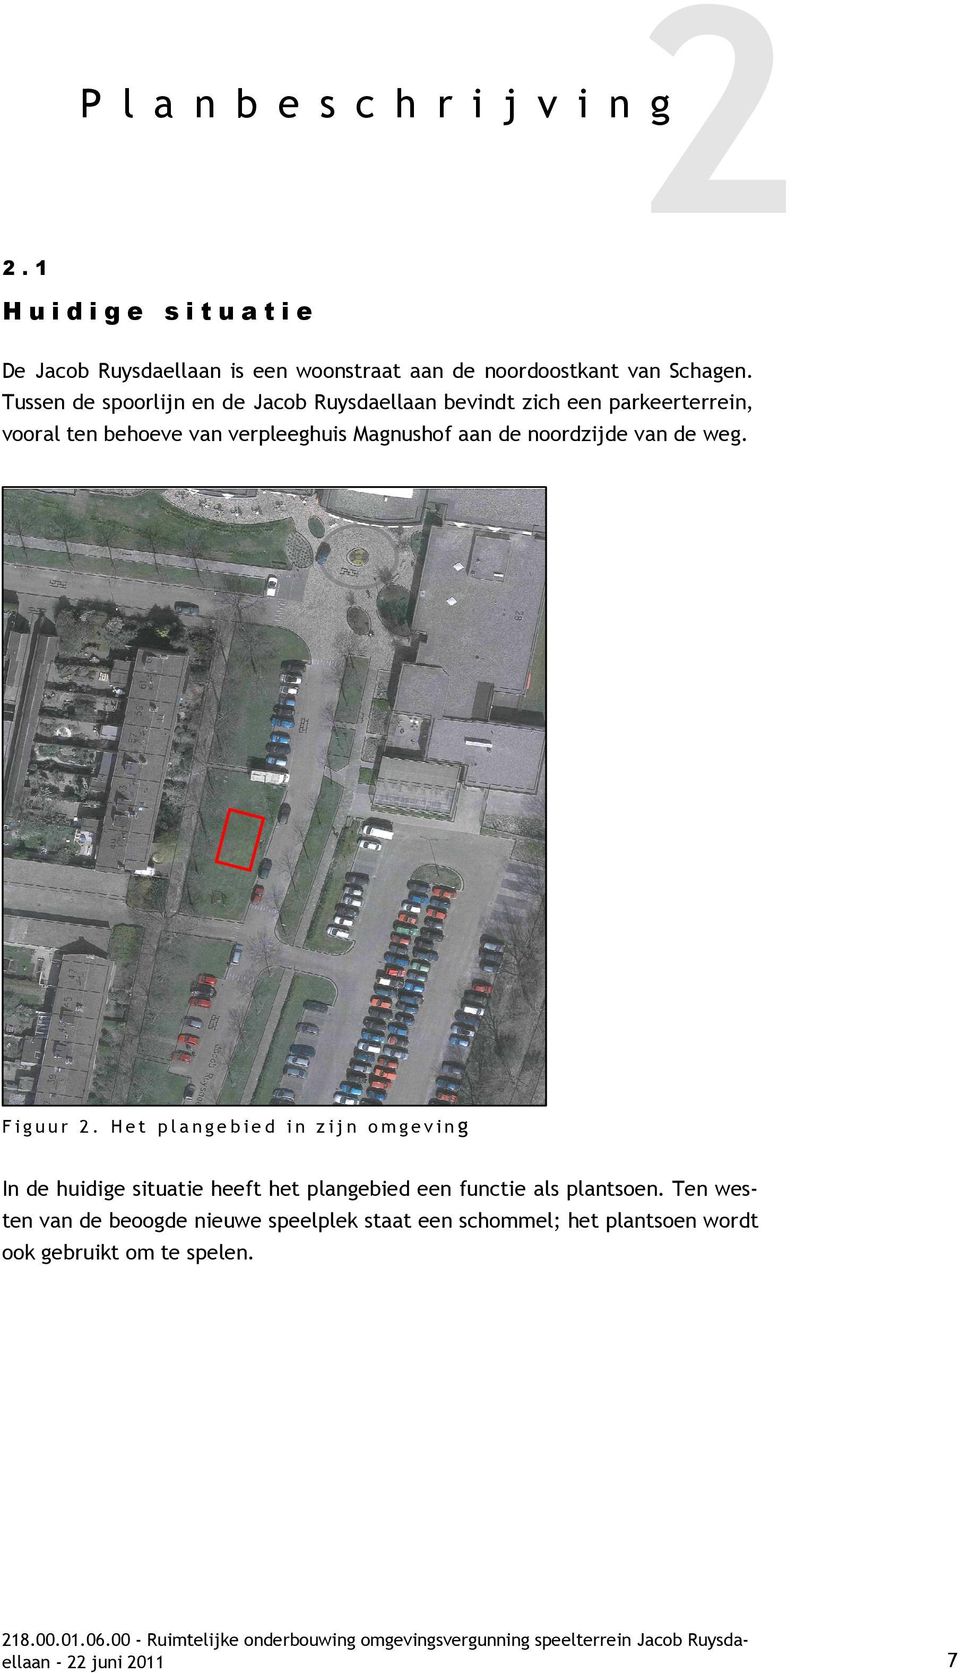 Tussen de spoorlijn en de Jacob Ruysdaellaan bevindt zich een parkeerterrein, vooral ten behoeve van verpleeghuis Magnushof aan de